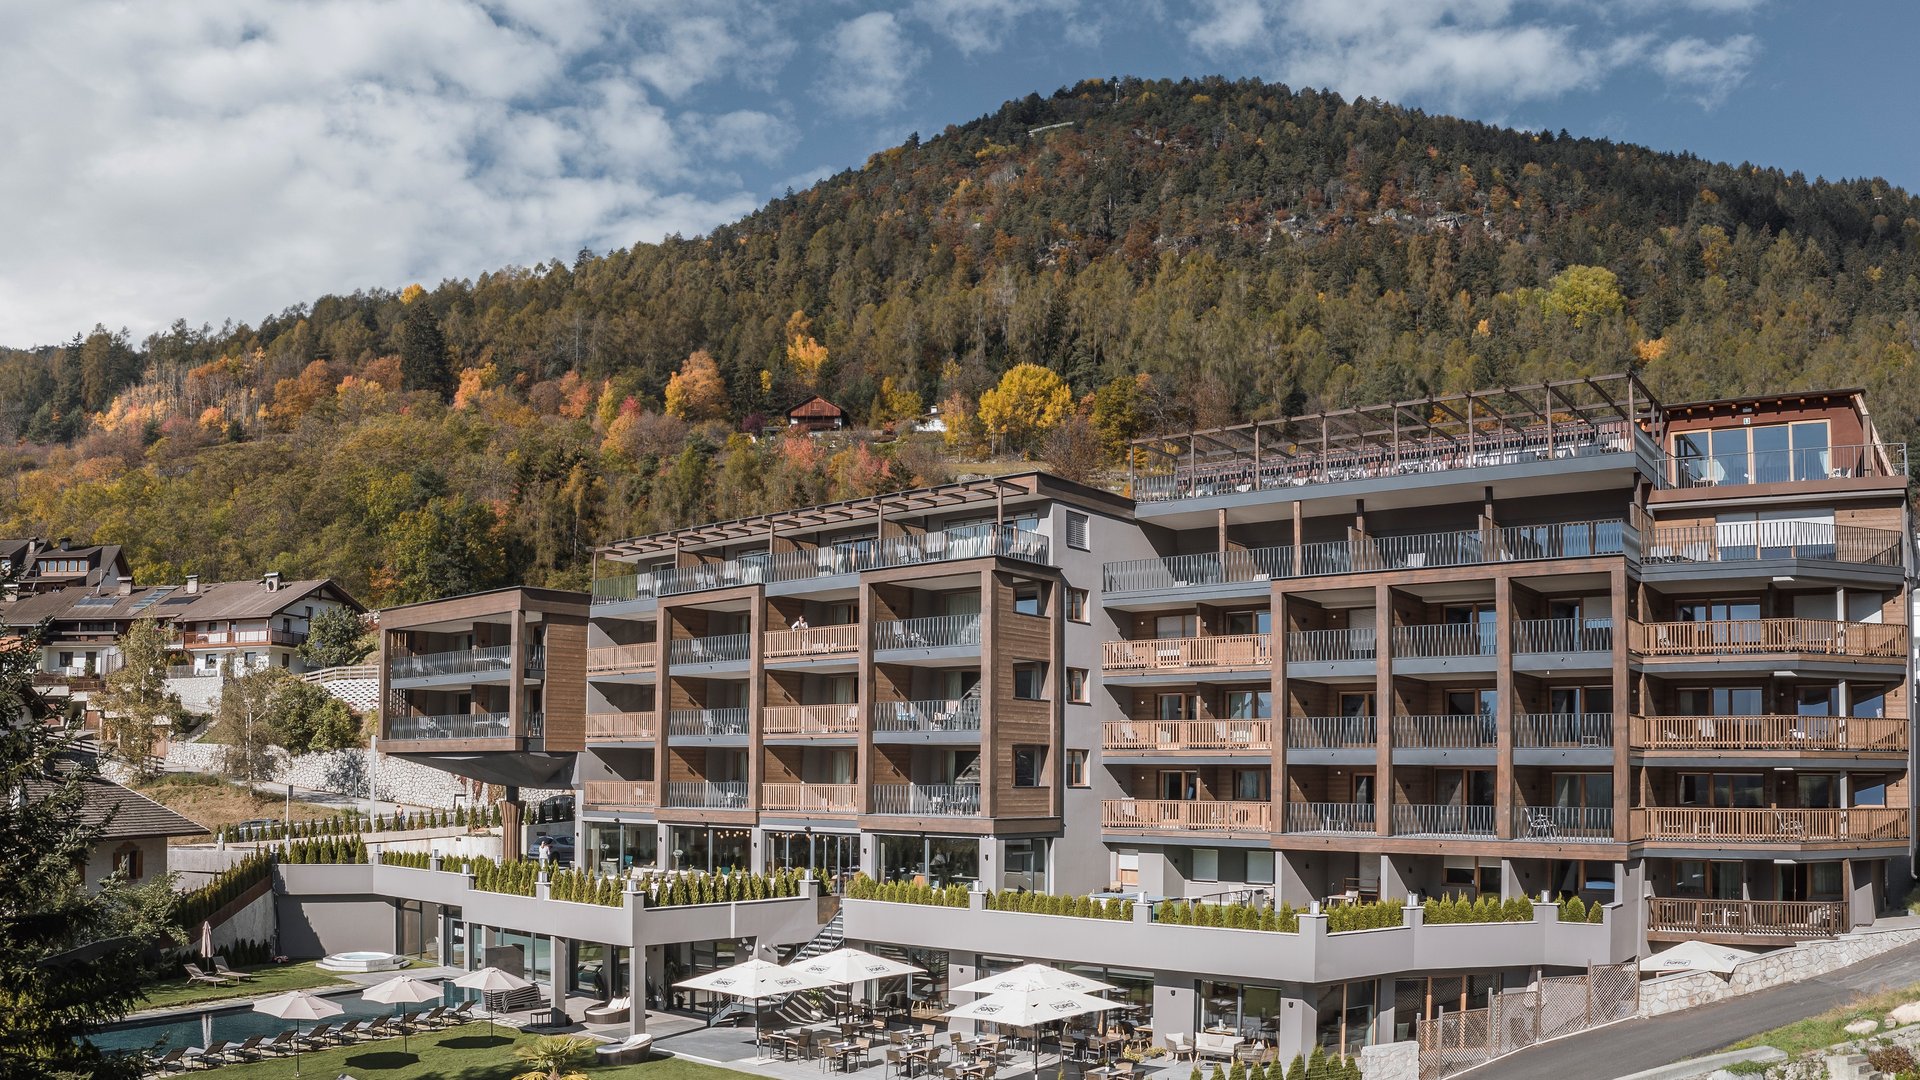 Lage unseres Hotels mit Aussicht in Südtirol: Molaris Lodges